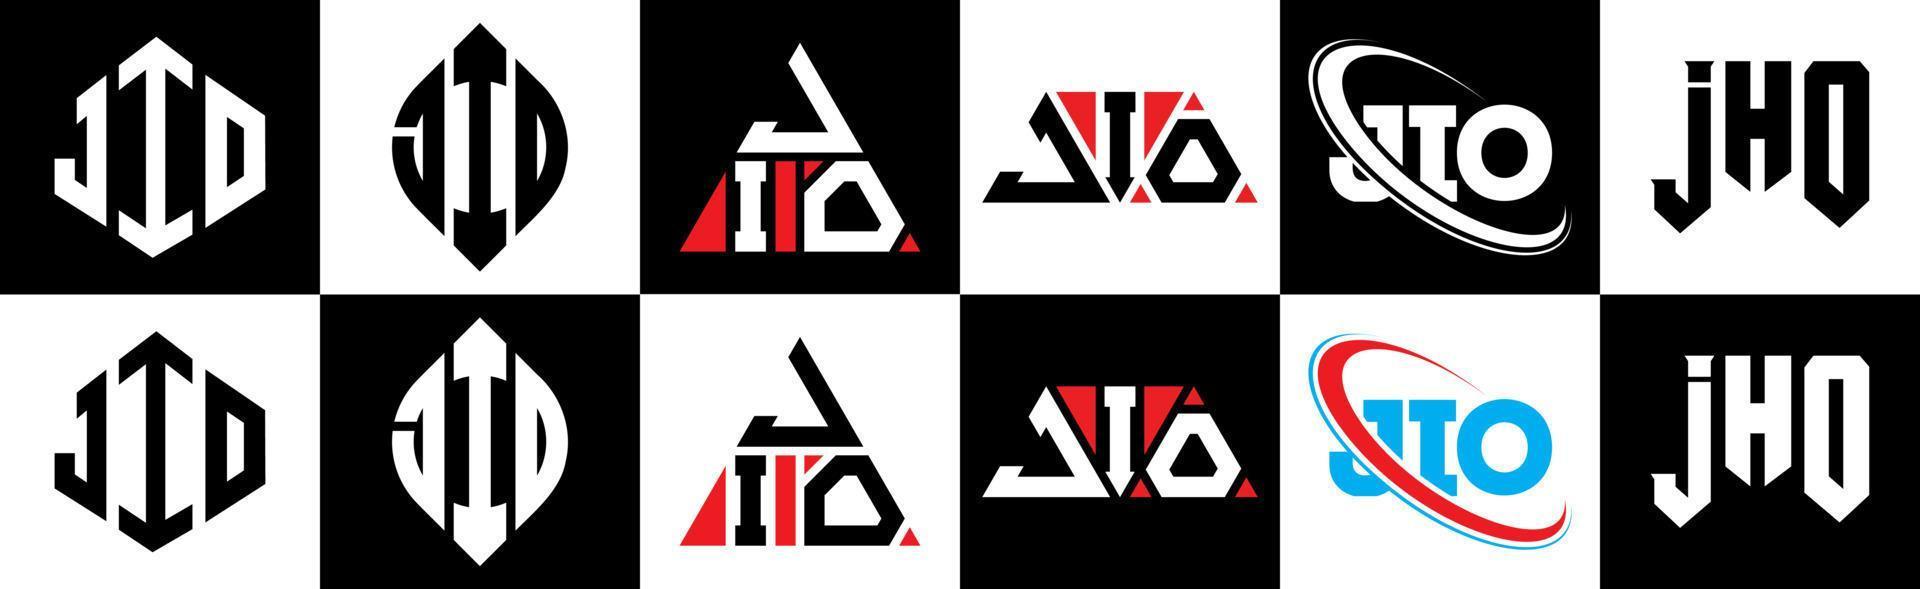 Jio-Buchstaben-Logo-Design in sechs Stilen. Jio-Polygon, Kreis, Dreieck, Sechseck, flacher und einfacher Stil mit schwarz-weißem Buchstabenlogo in einer Zeichenfläche. Jio minimalistisches und klassisches Logo vektor